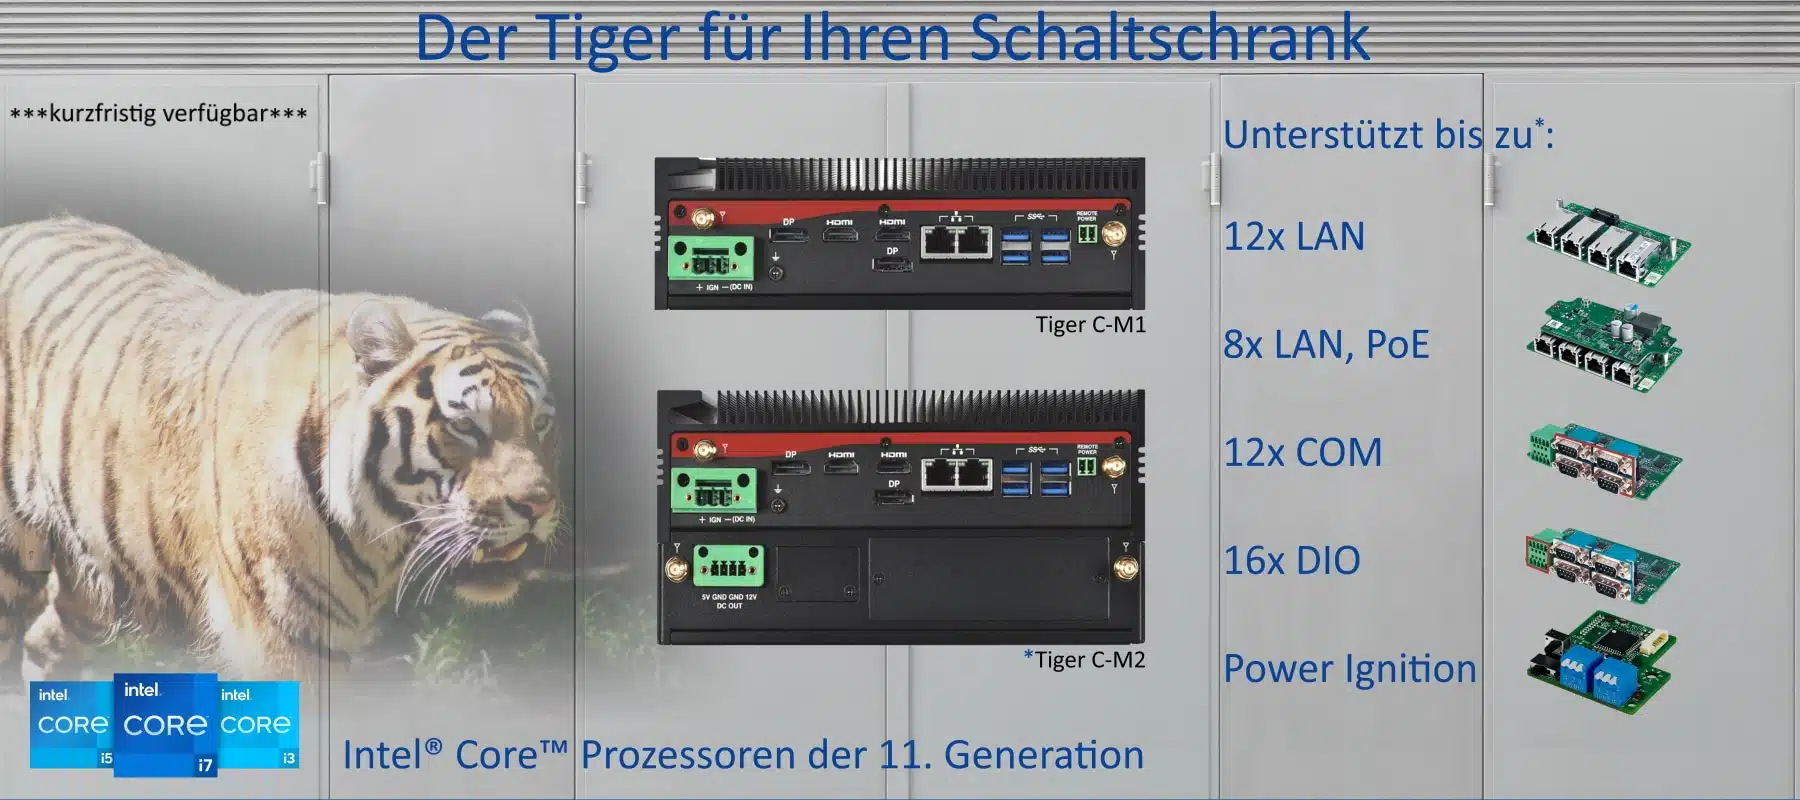 Industrie-PC Tiger C-M1 und Tiger C-M2